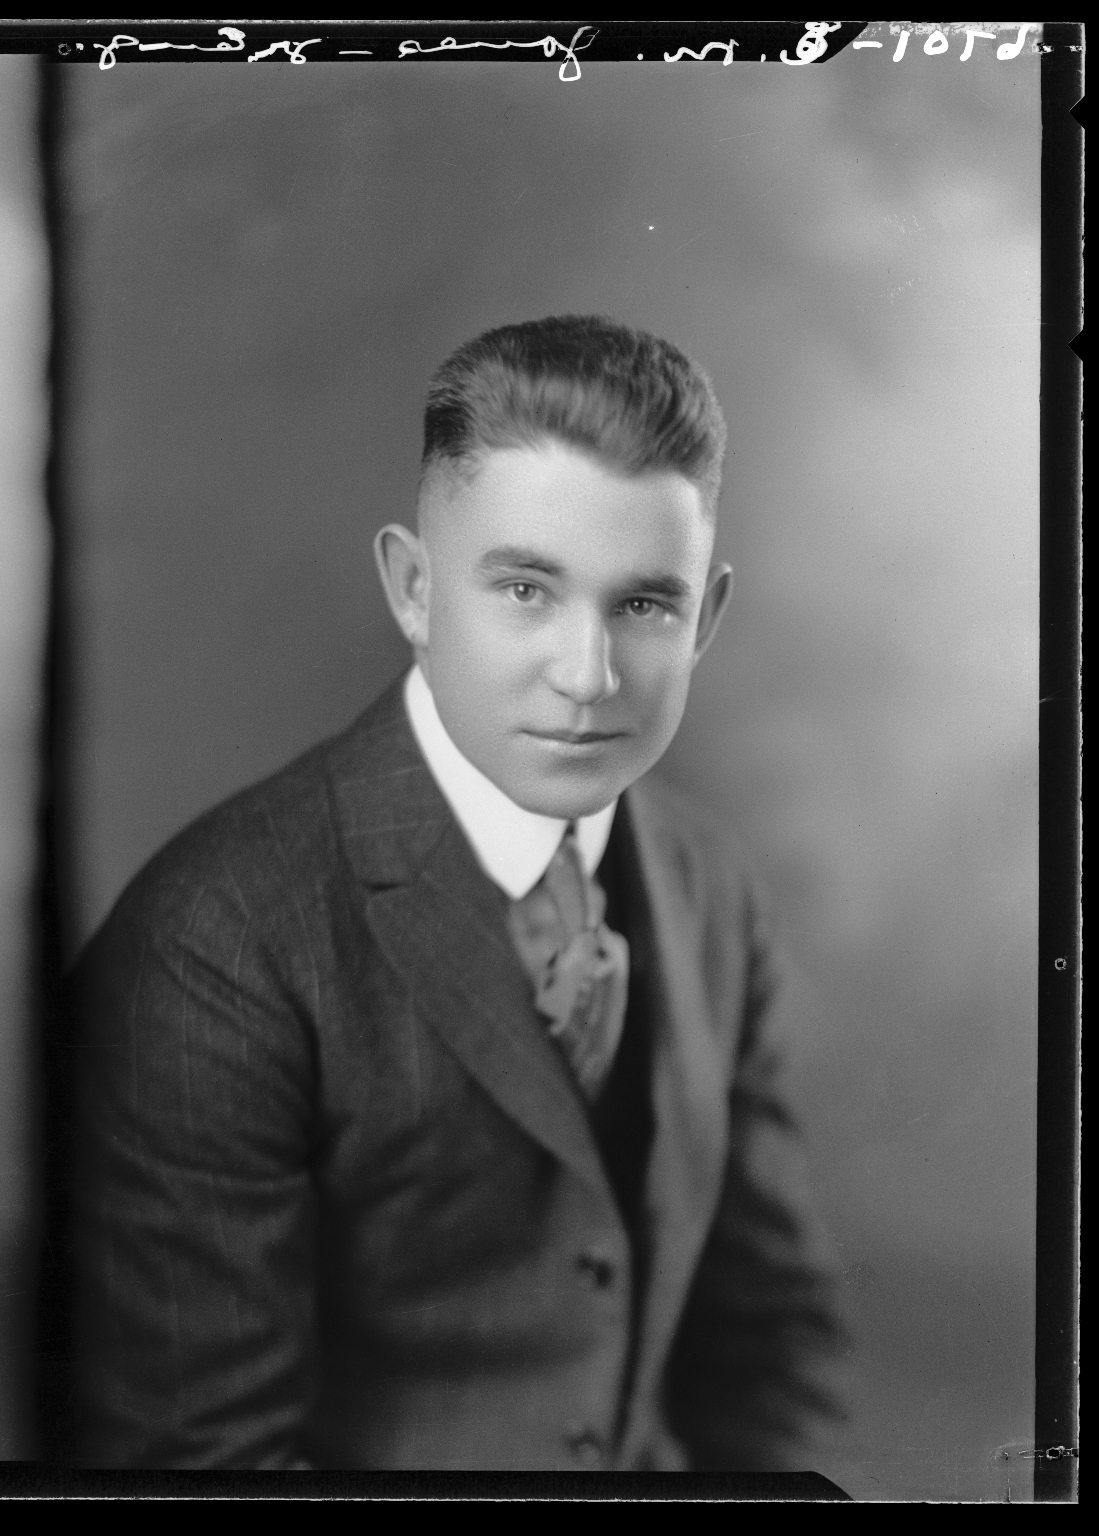 Portraits of B. M. Jones